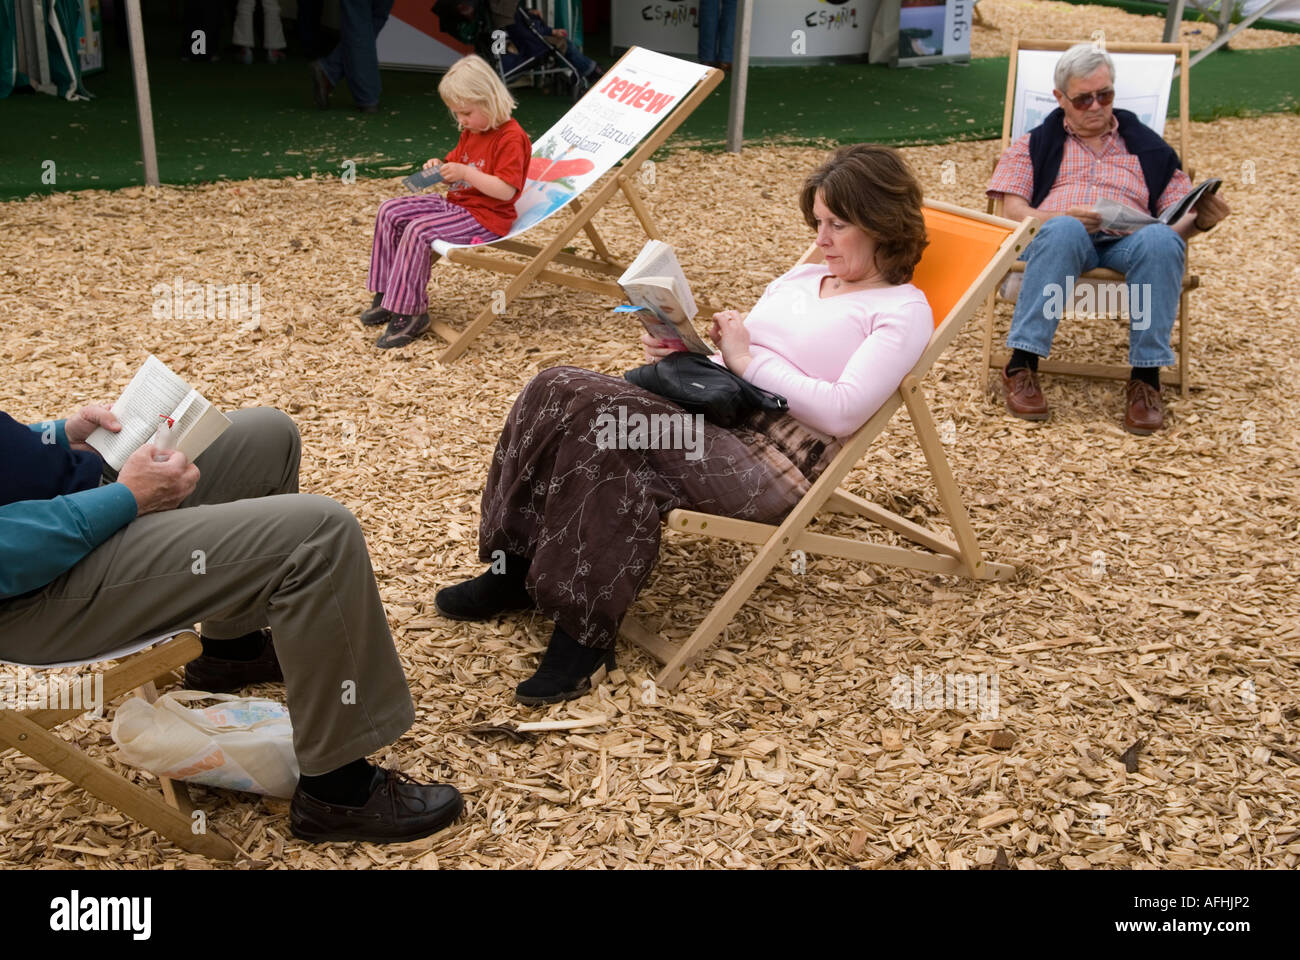 Penguin livre éditeur auteurs publicité chaises longues personnes lisant Hay Festival Hay on Wye Powys Wales 2006 2000s HOMER SYKES Banque D'Images